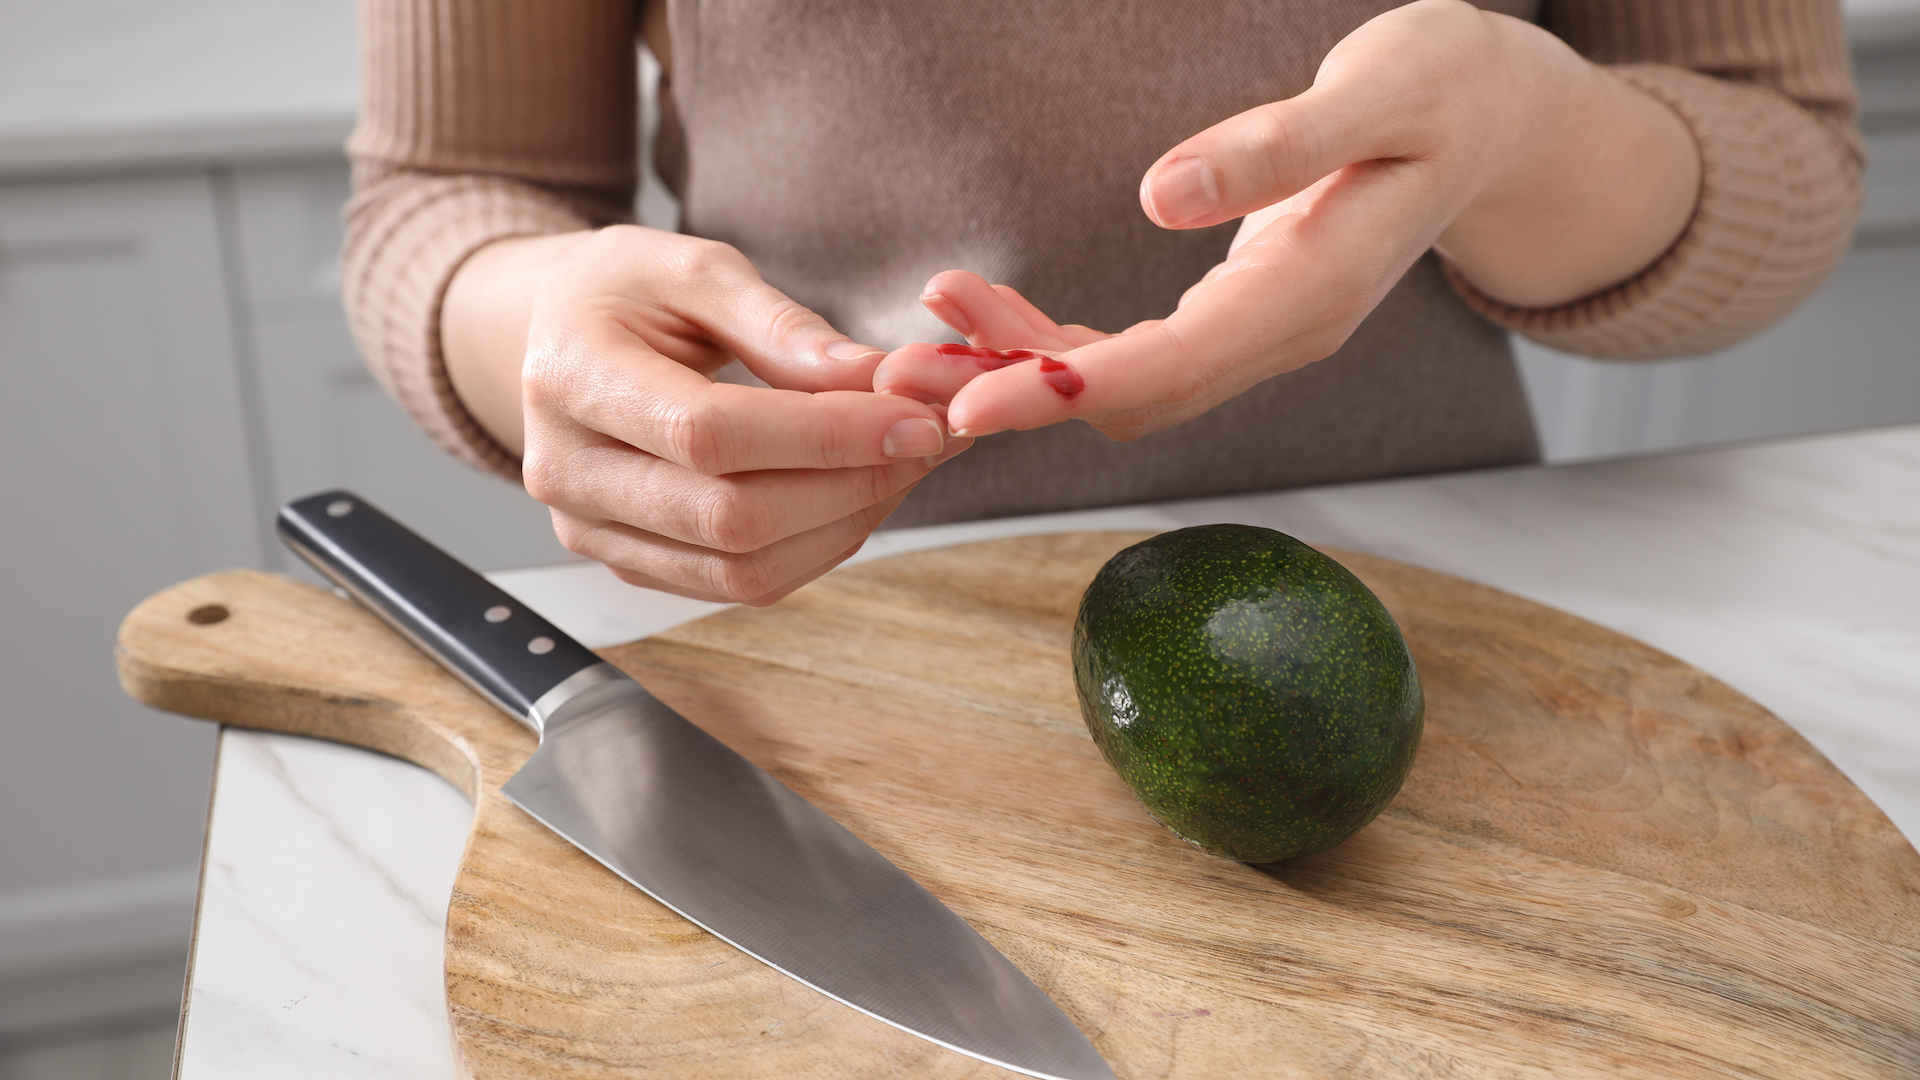 Fotografia de uma mão com um pequeno corte ao lado de uma faca e uma tábua de cortar.